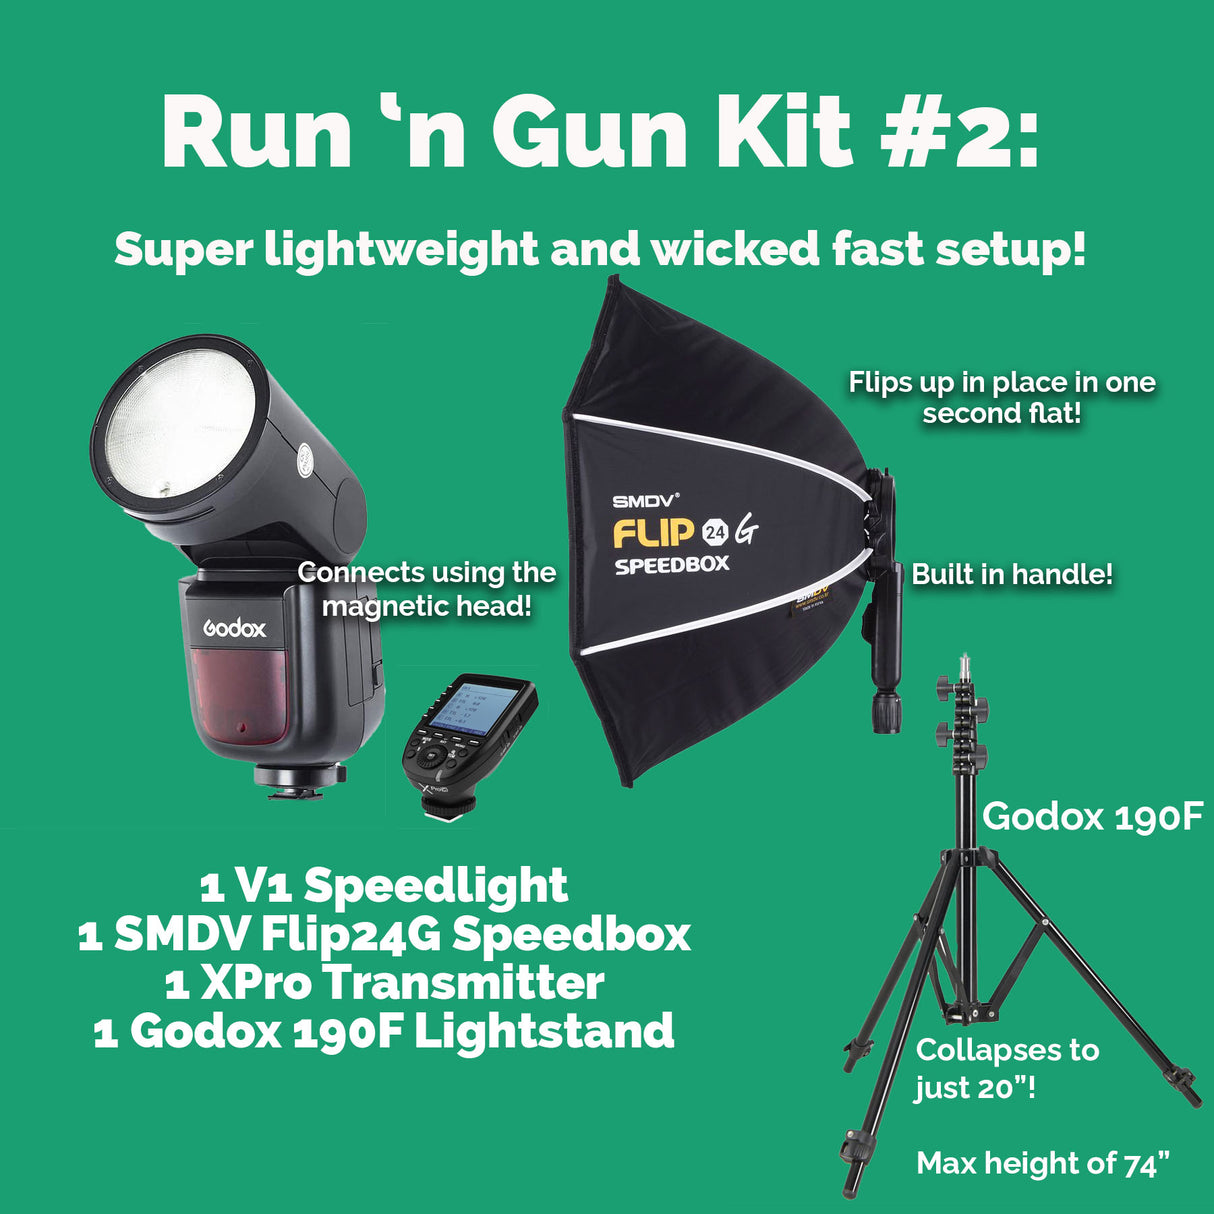 Run 'n Gun Kit #2 with V1